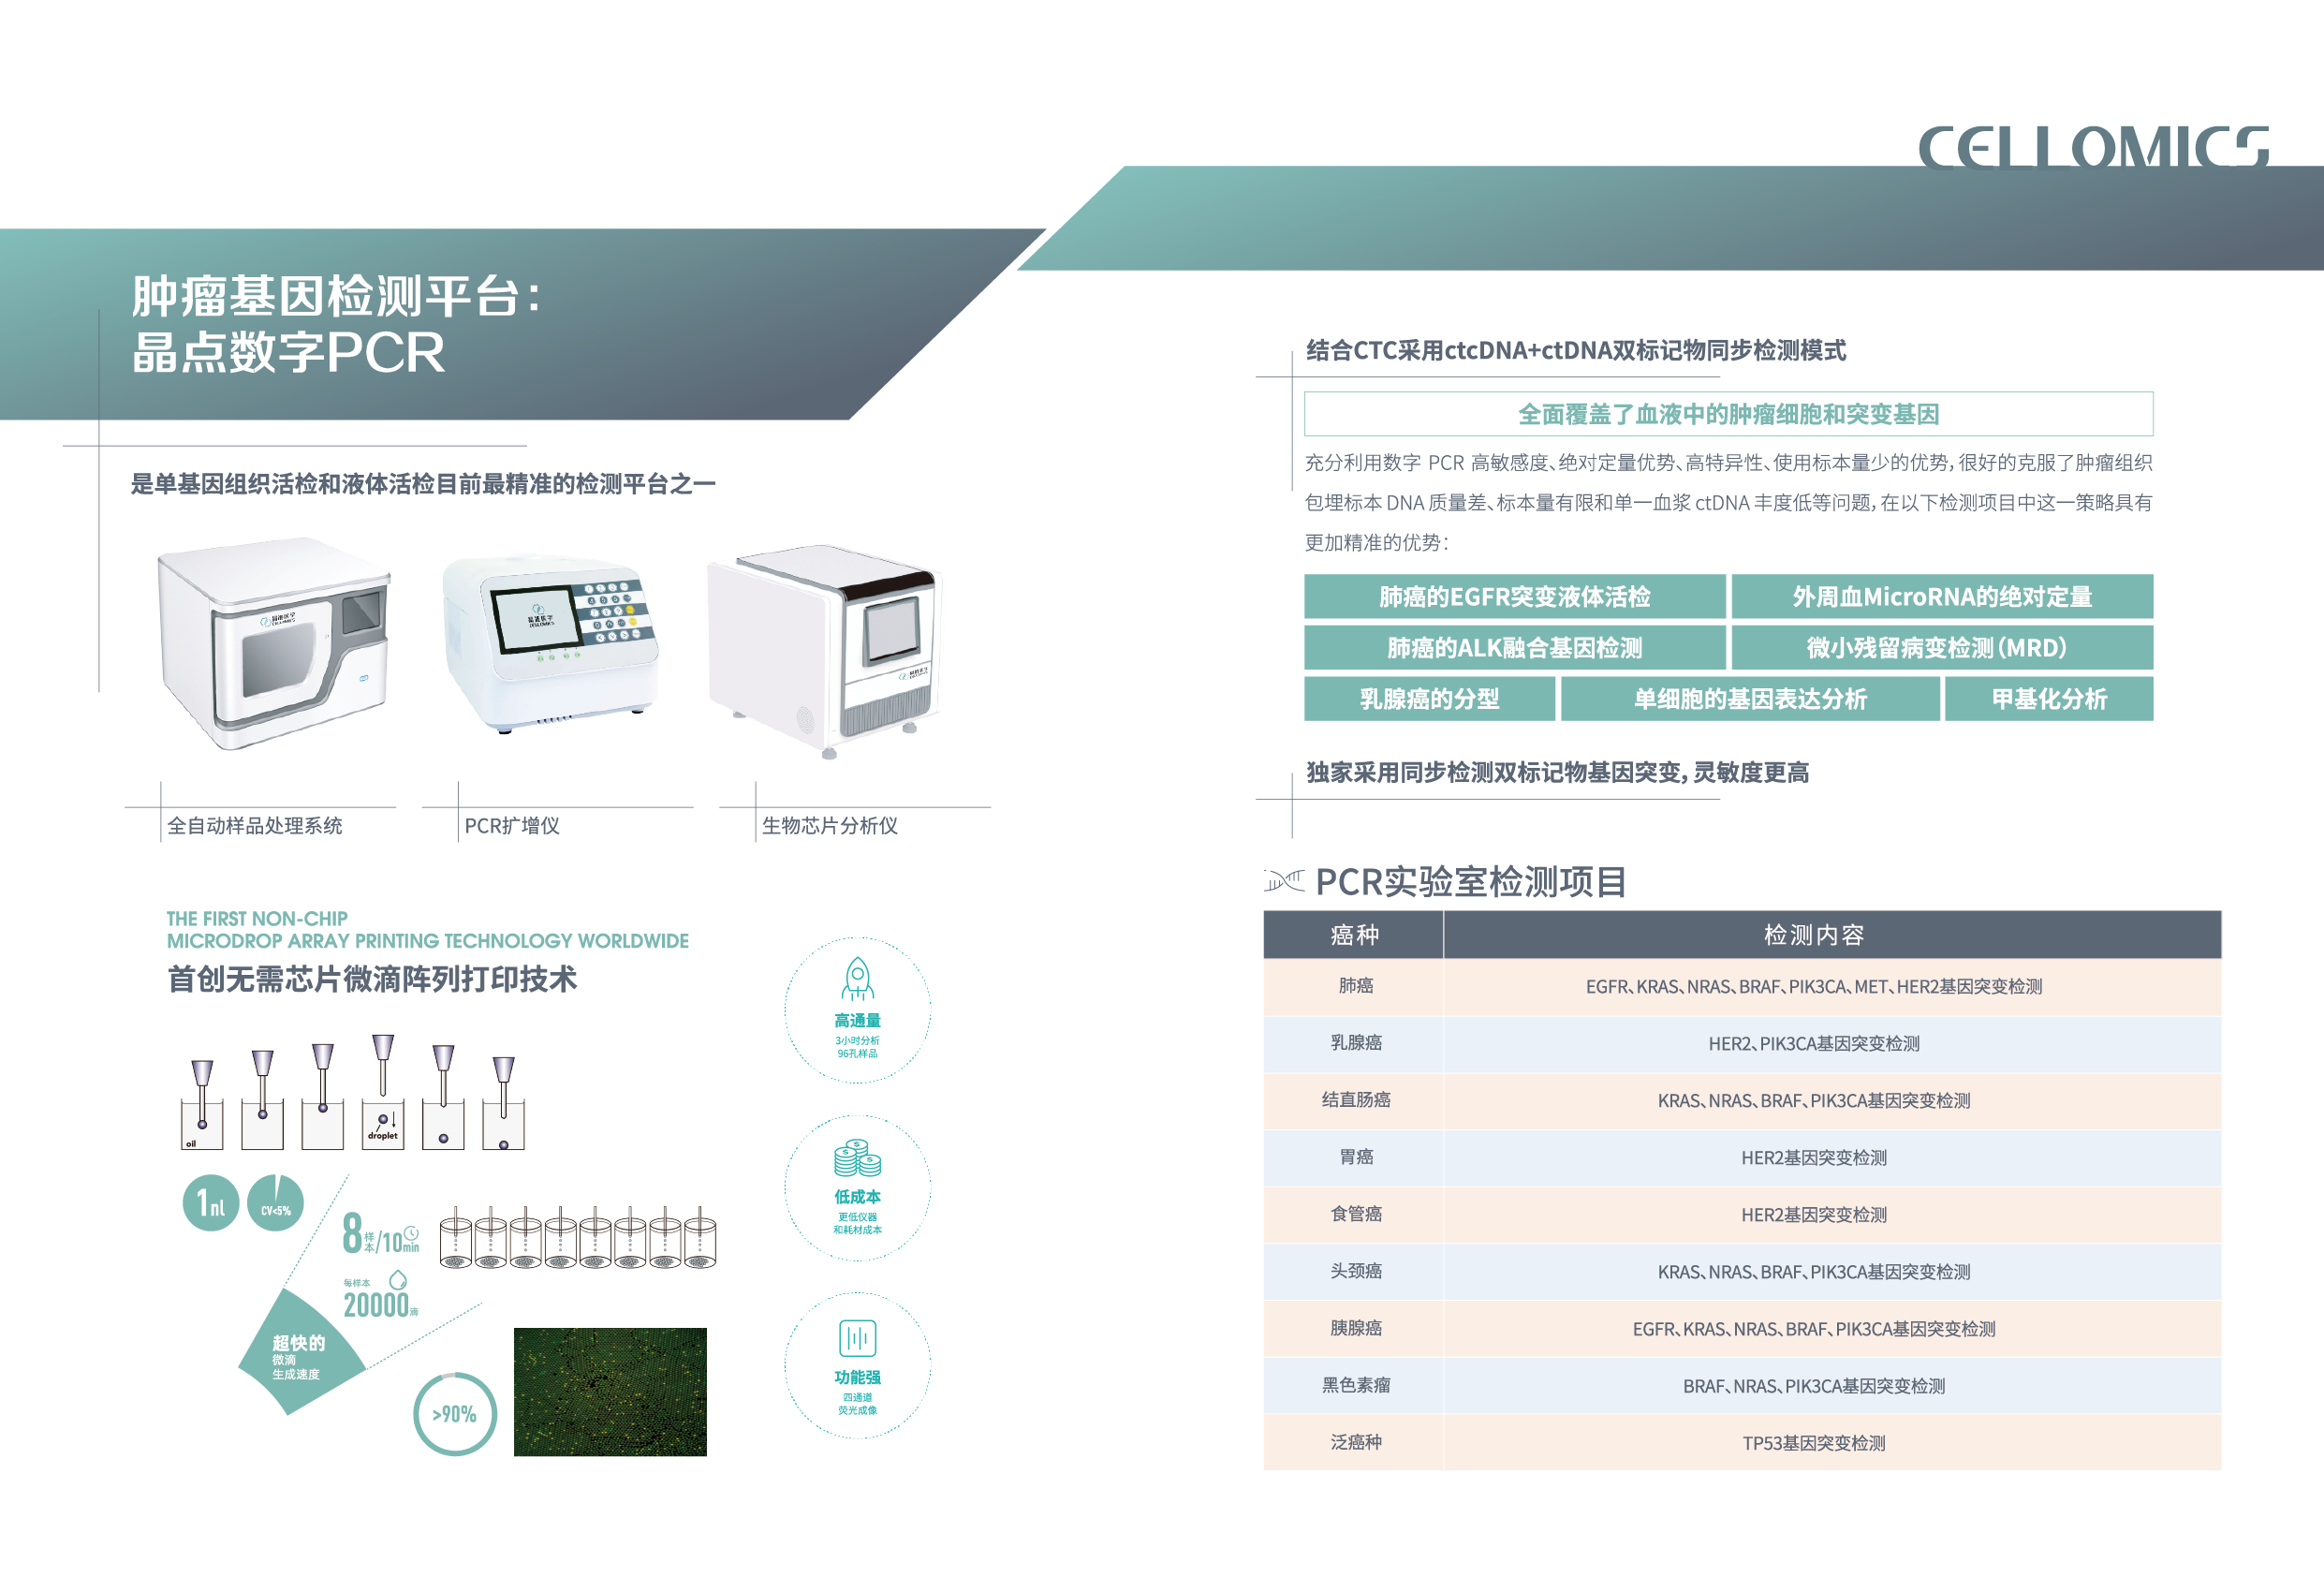 肿瘤基因检测平台： 晶点数字PCR是单基因组织活检和液体活检目前最精准的检测平台之一